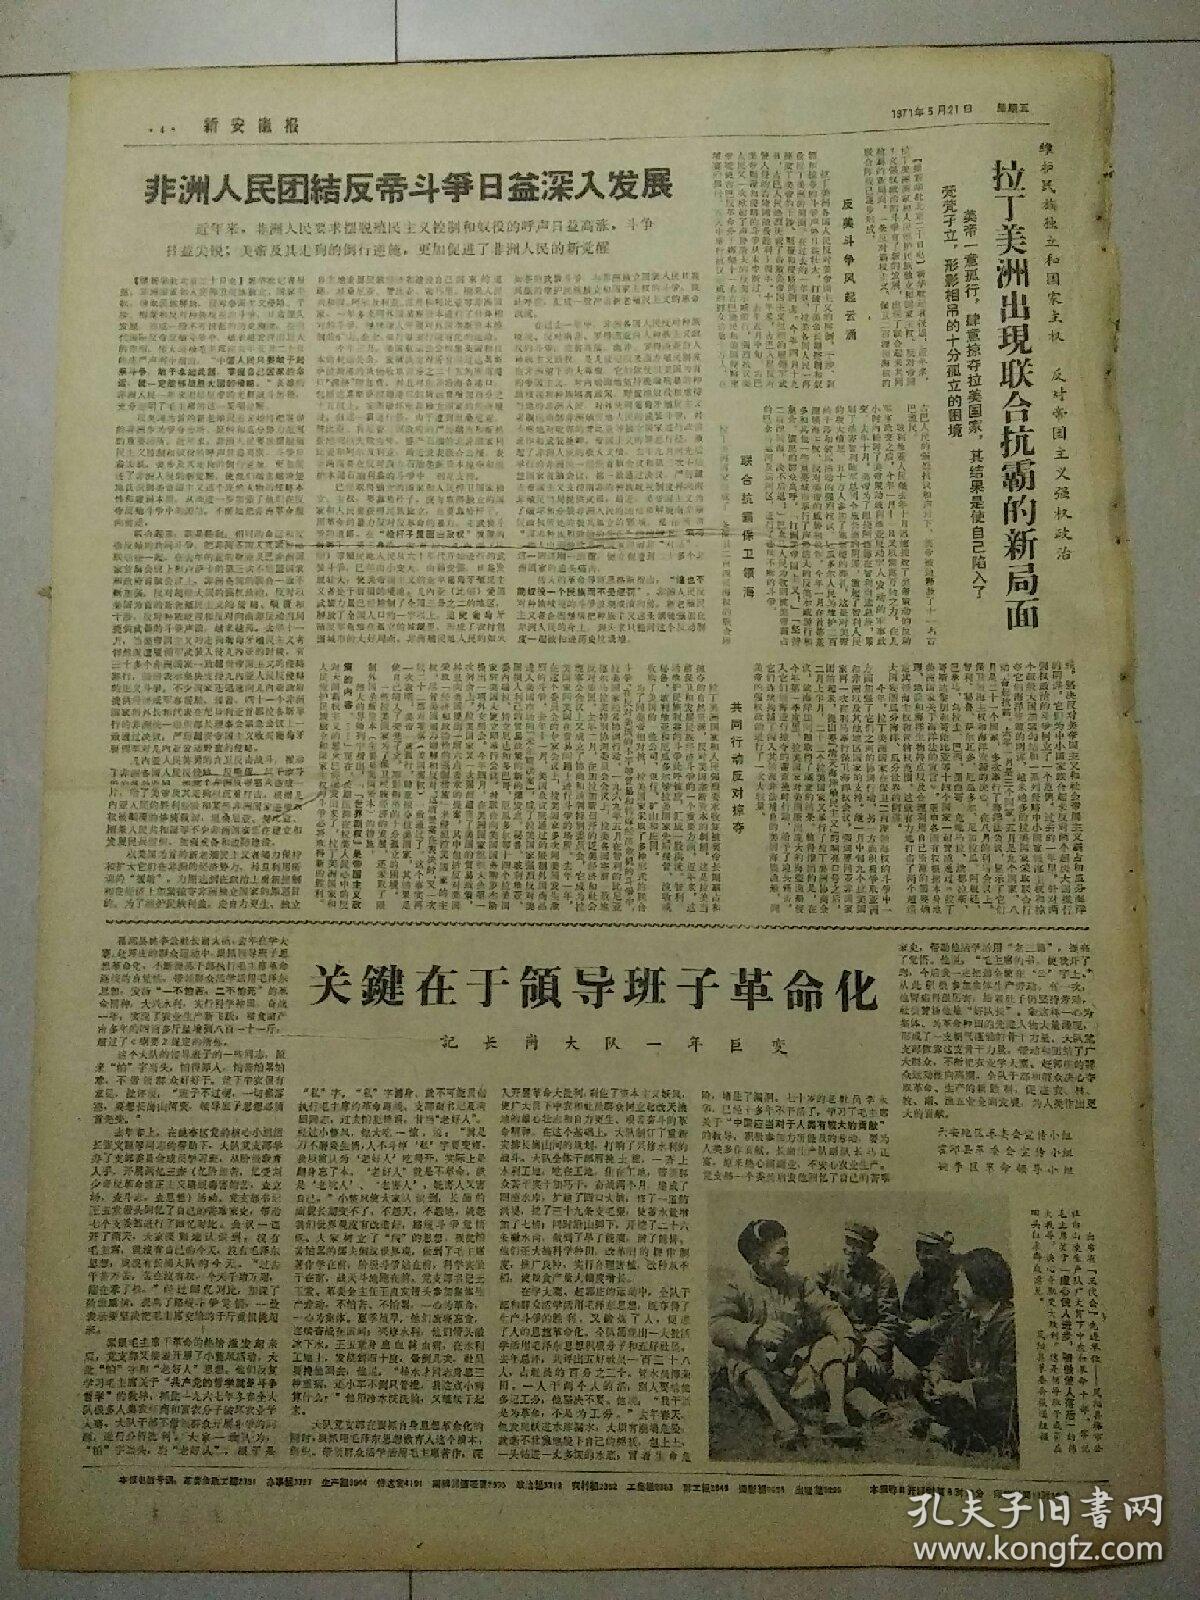 生日报新安徽报1971年5月21日（4开四版）
合肥市工业战线革命生产取得新胜利；
西哈努克亲王离杭州到达上海进行私人访问；